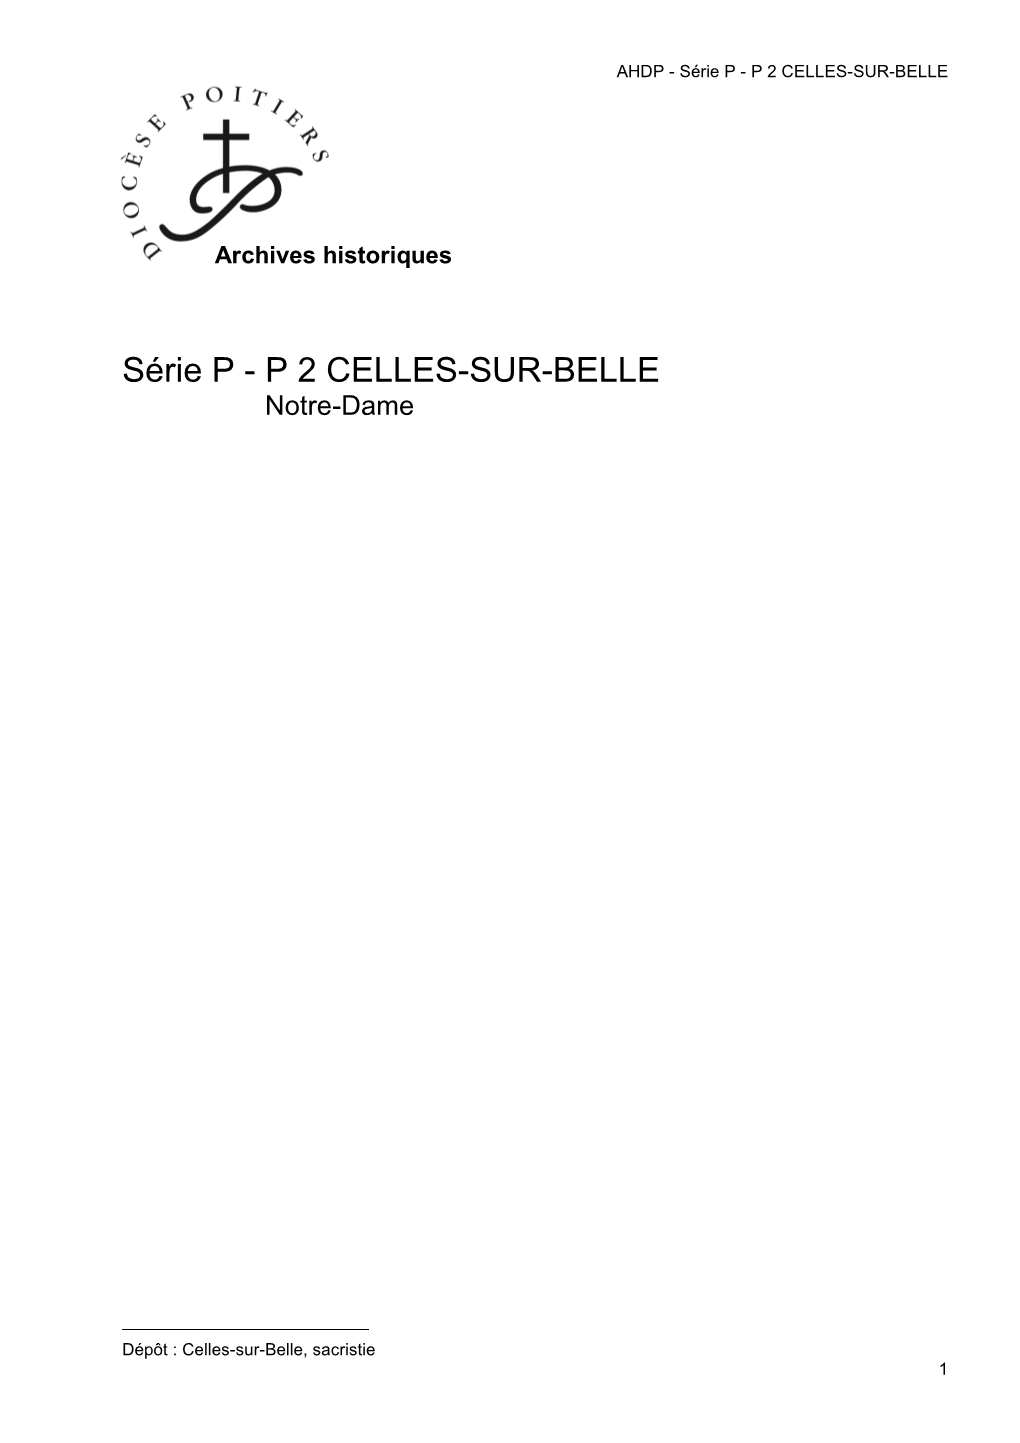 P 2 Celles-Sur-Belle